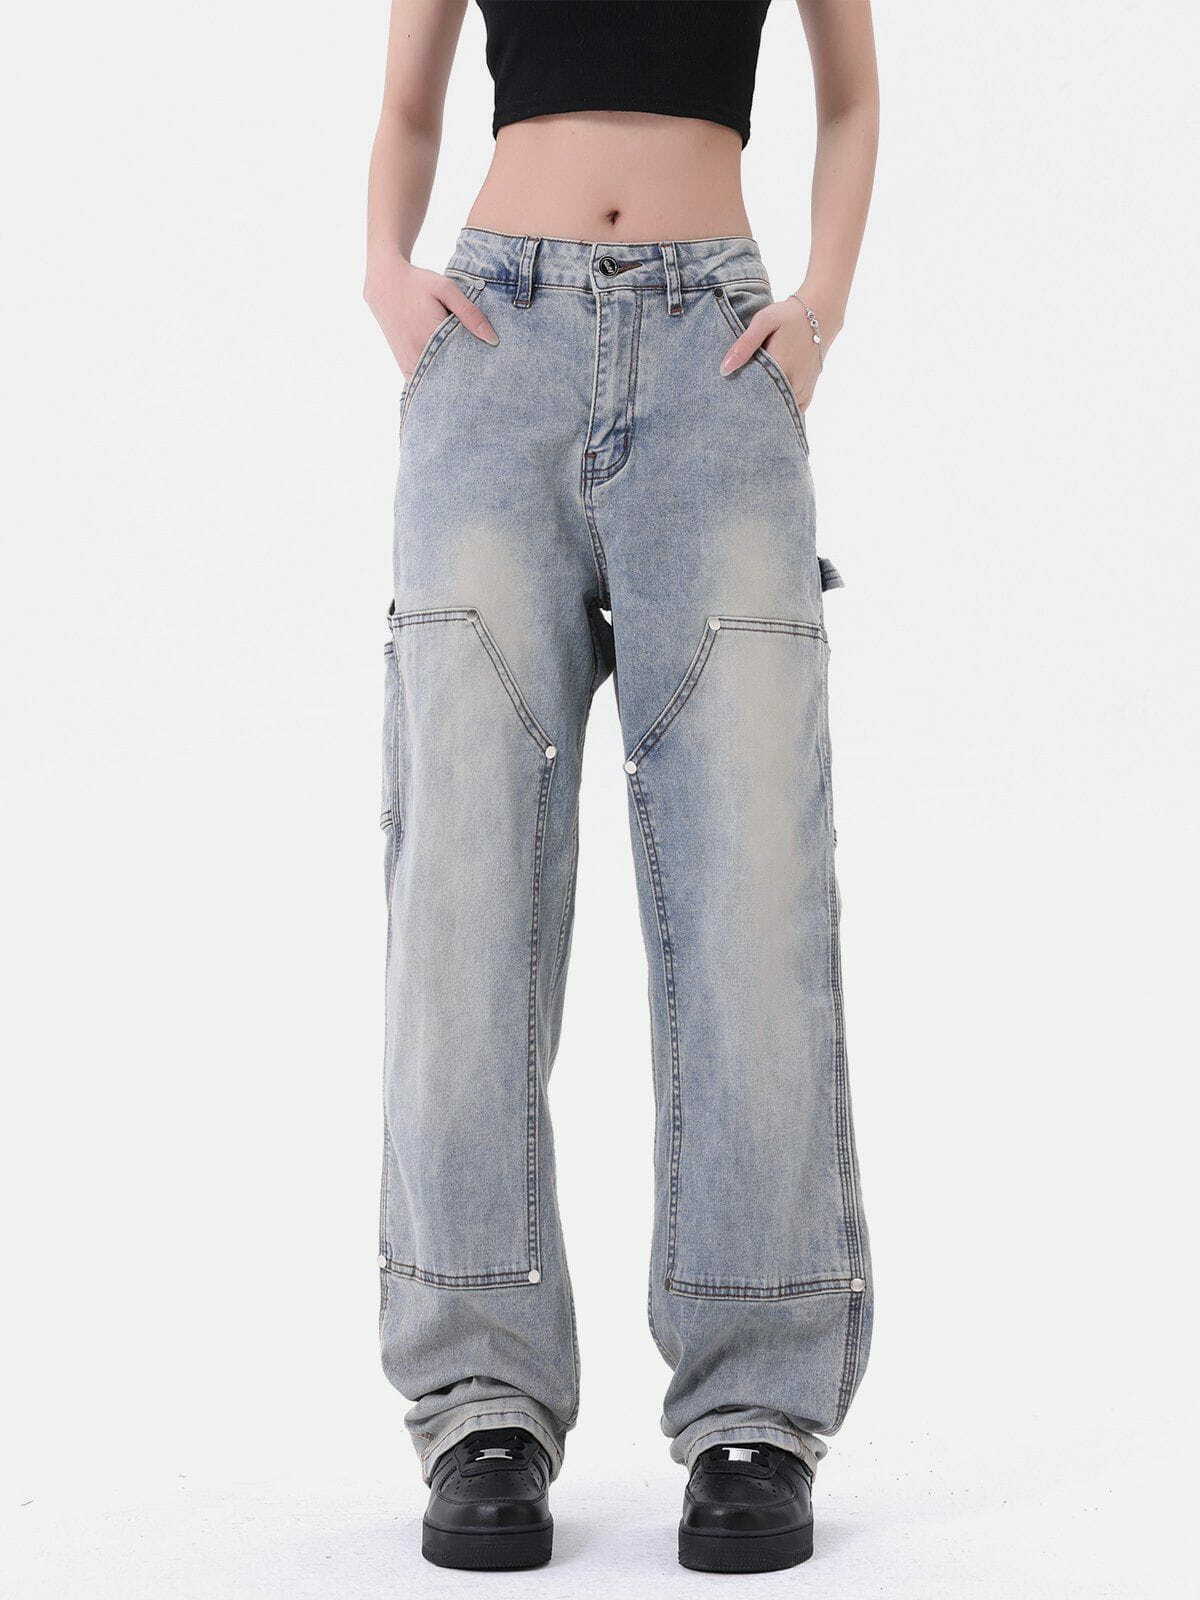 youthful rivet pocket jeans   sleek urban streetwear 2229